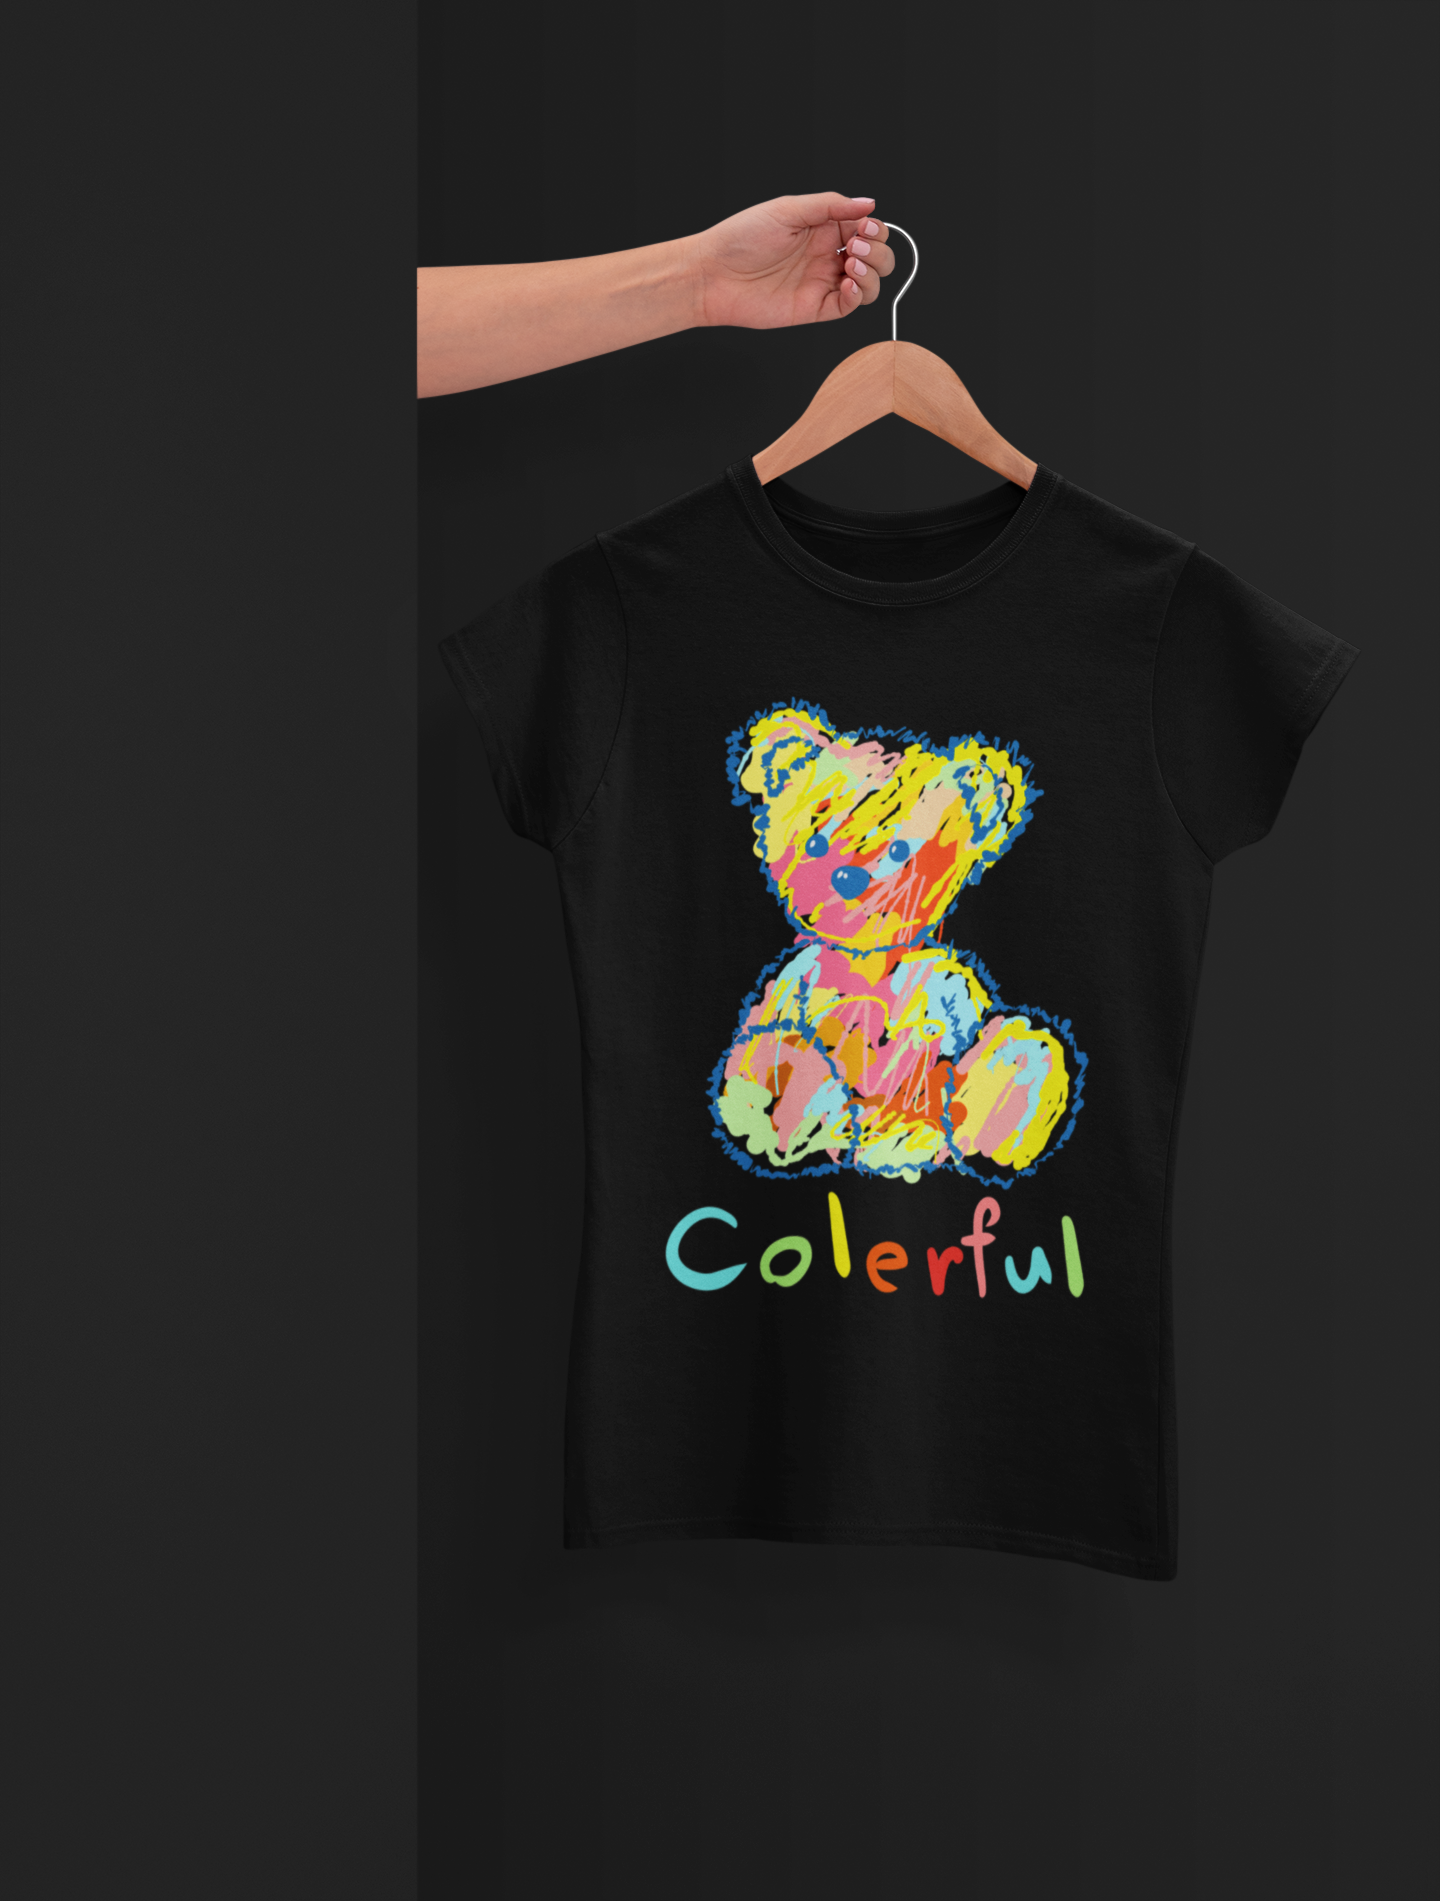 Colerful Bear Black T-Shirt For Women